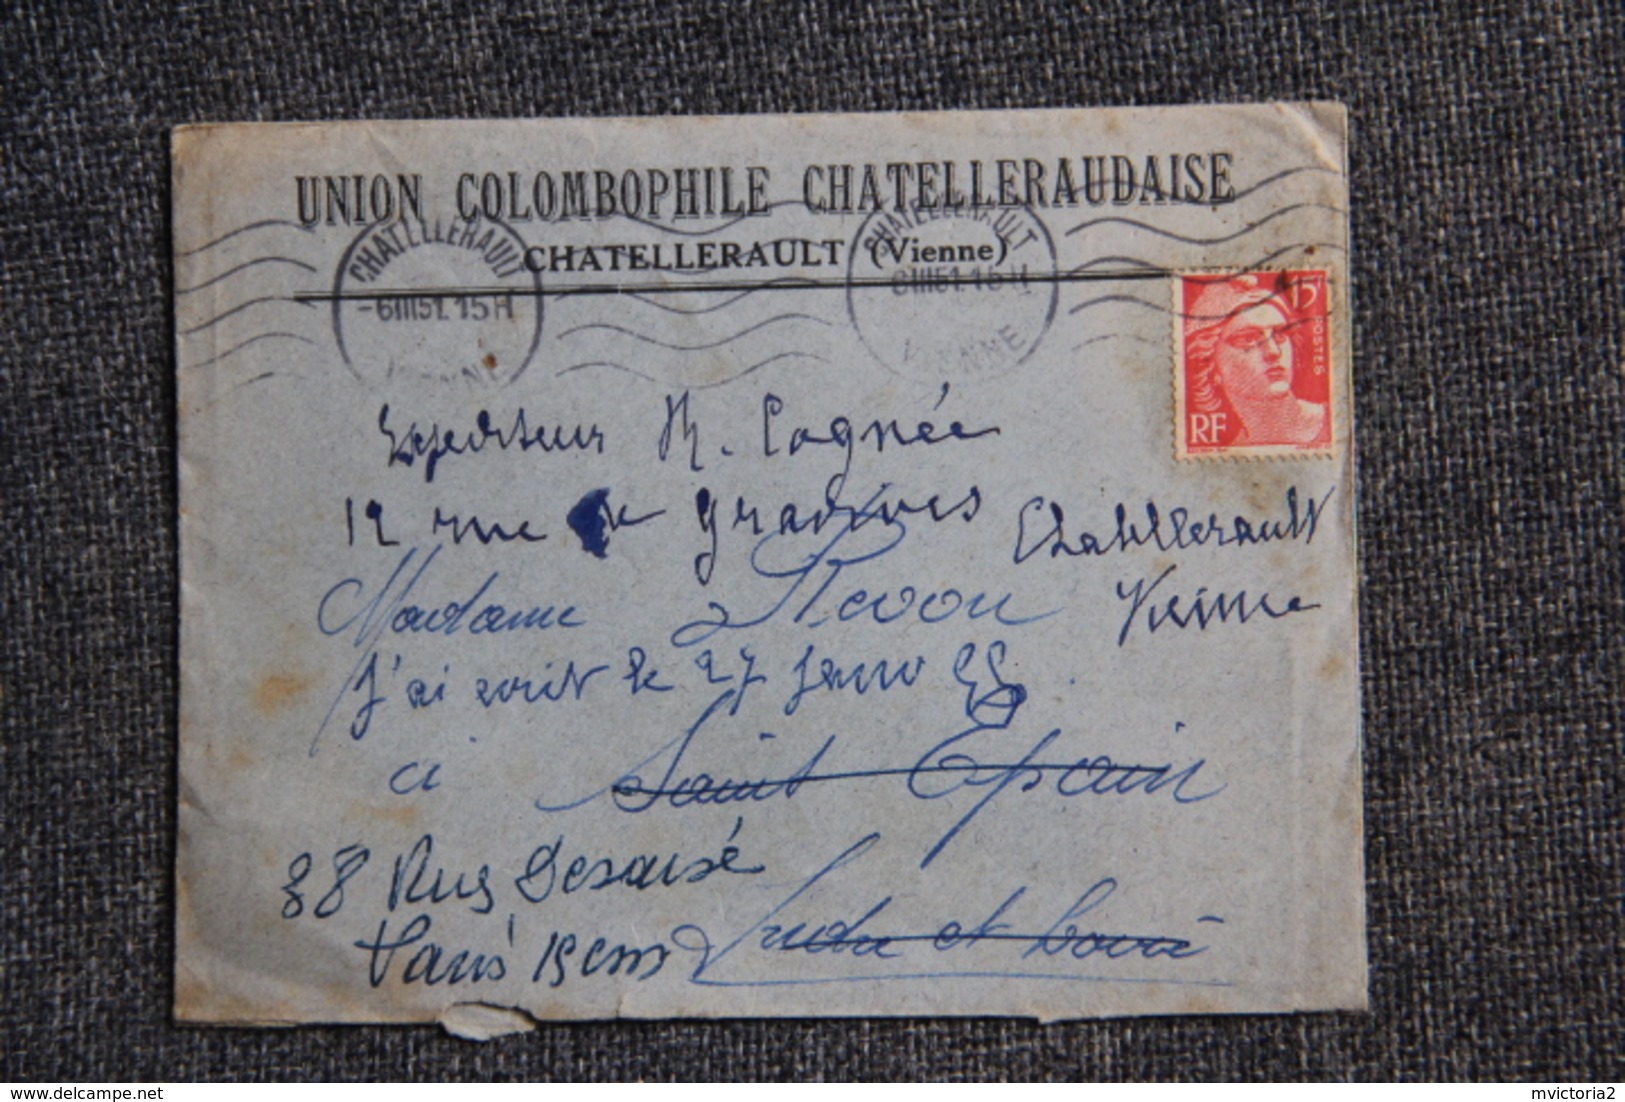 Lettre De CHATELLERAULT ( Vienne) - Union Colombophile Chatelleraudaise Avec Enveloppe Publicitaire. - Sport En Toerisme